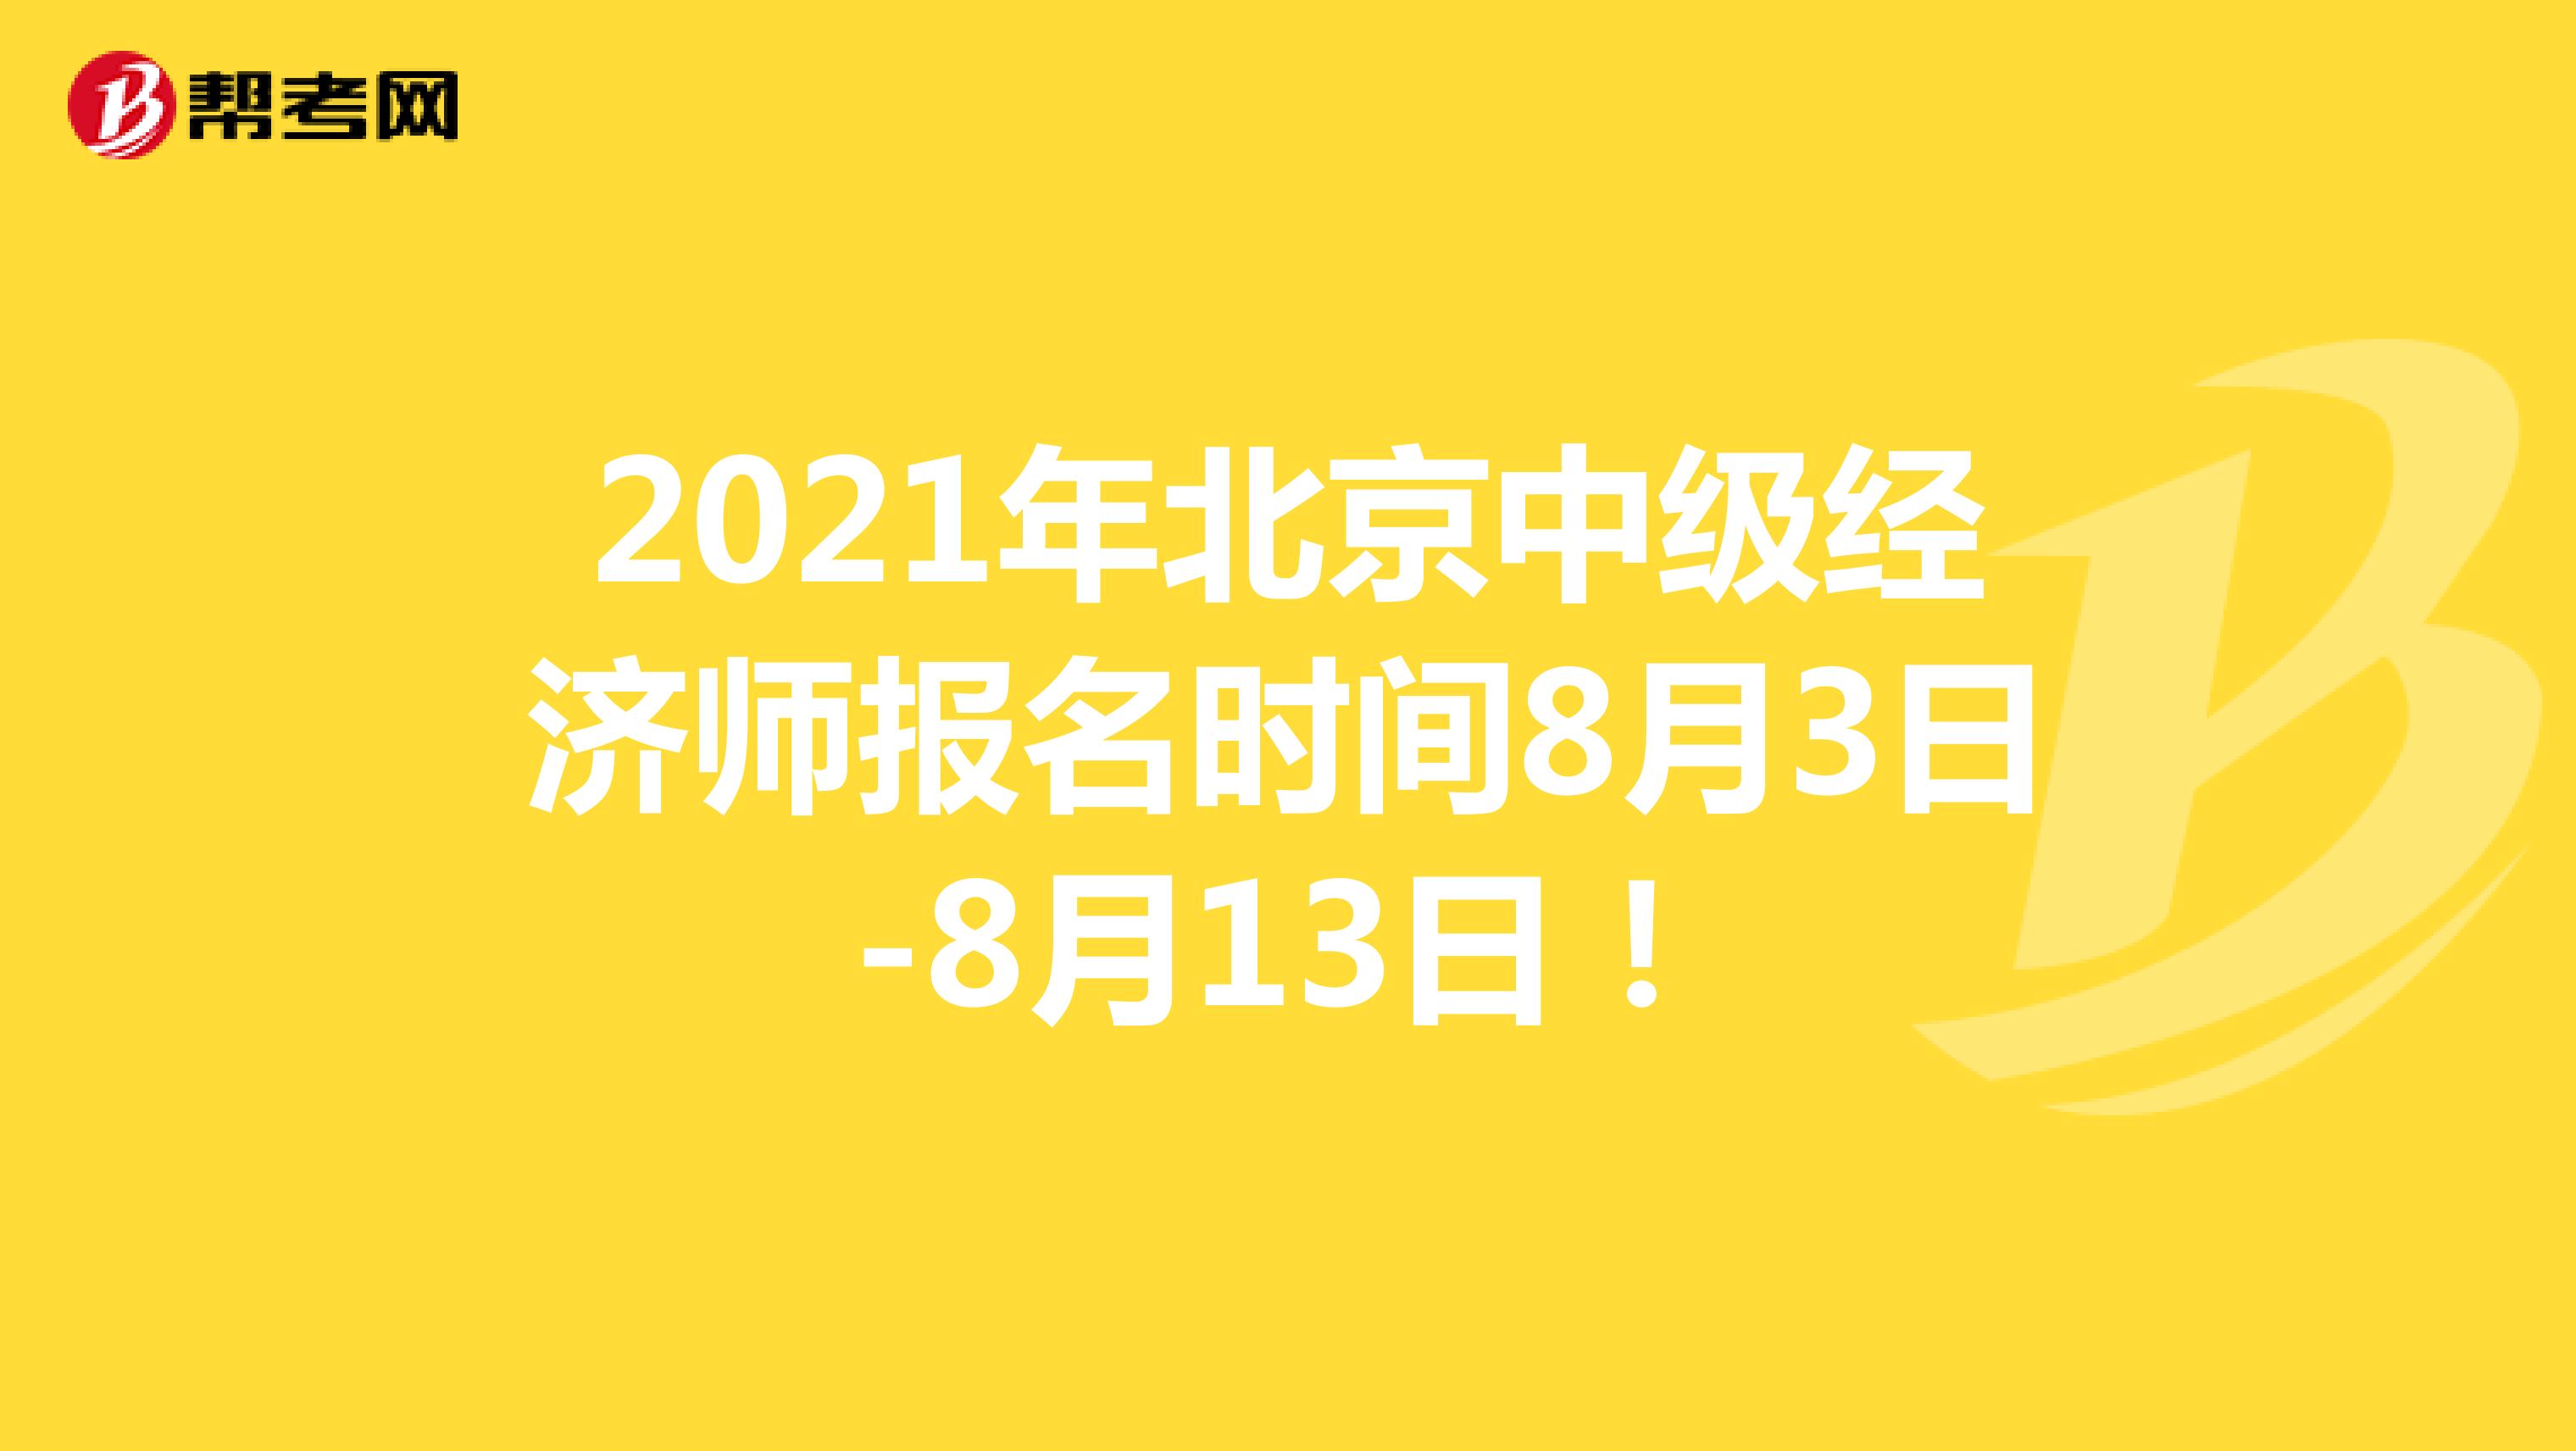 2021年北京中级经济师报名时间8月3日-8月13日！